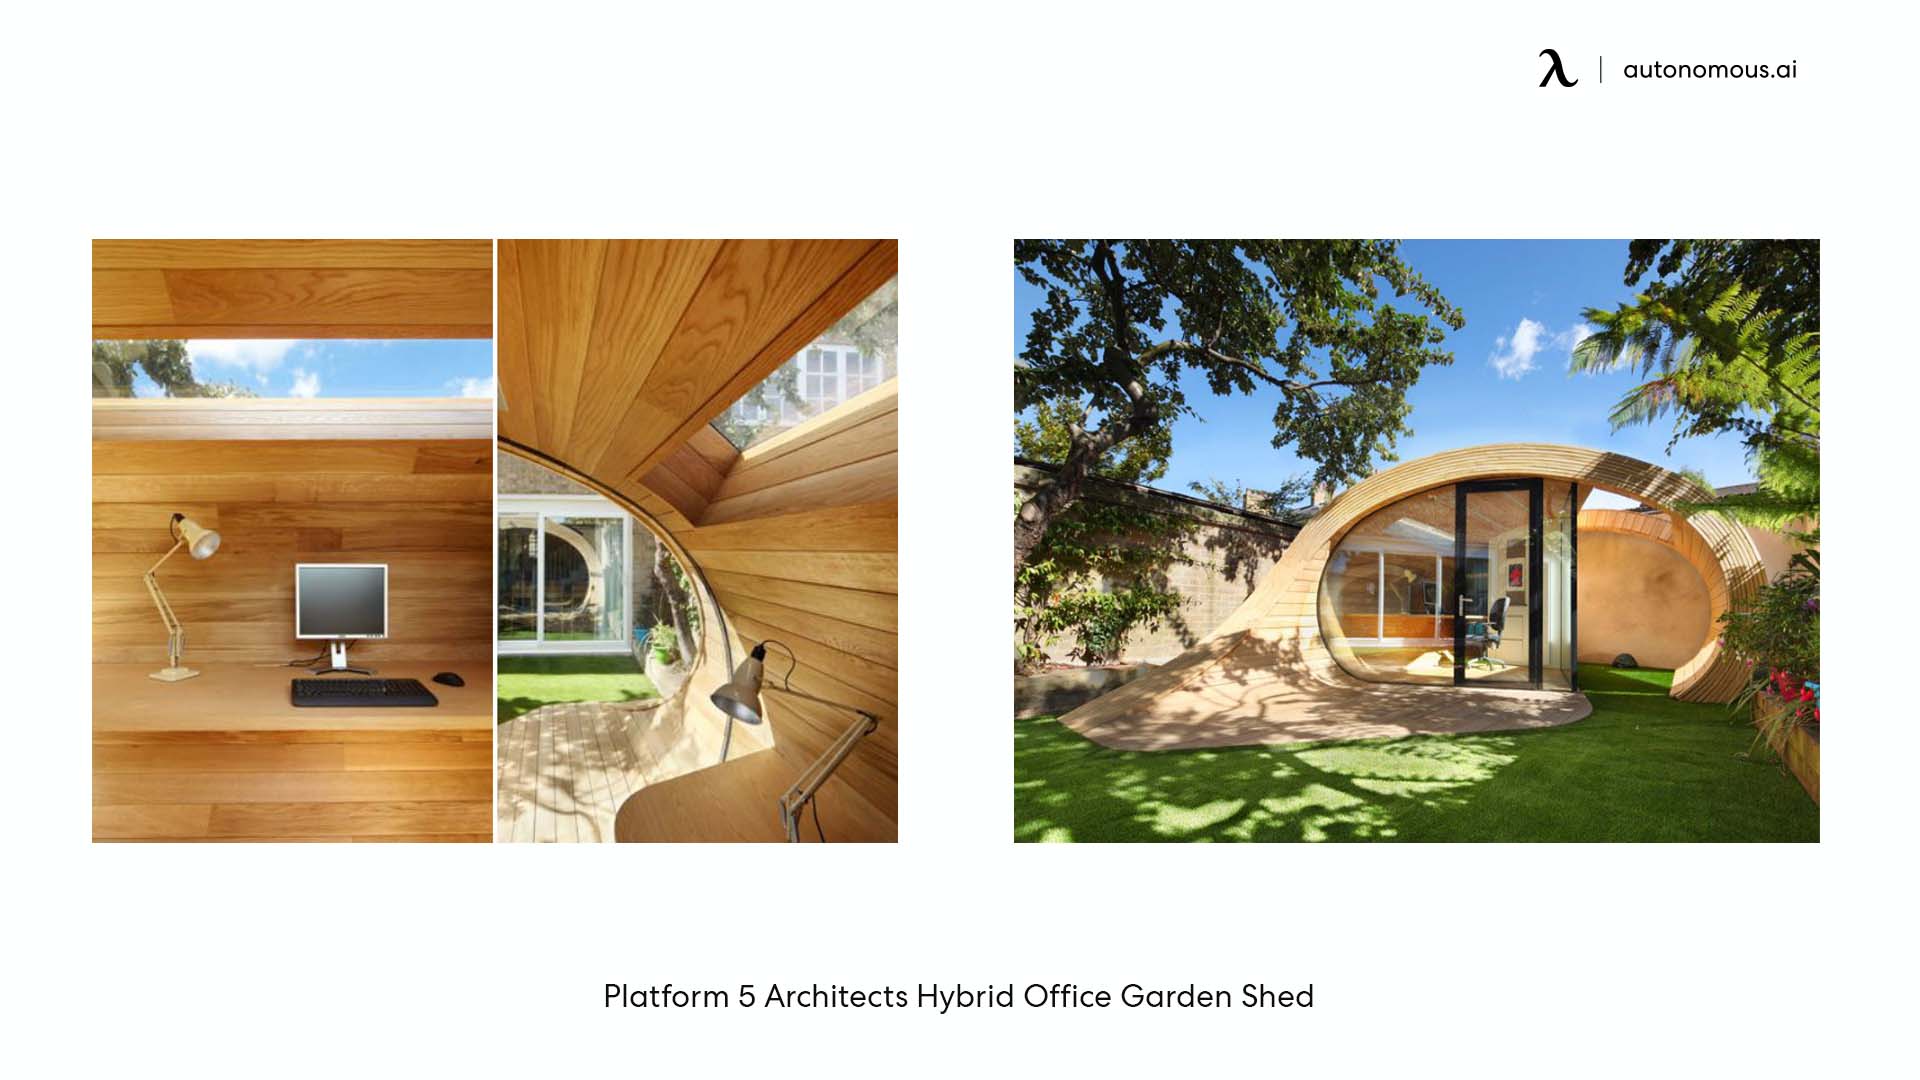 Platform 5 Architects Hybrid Office Garden Shed